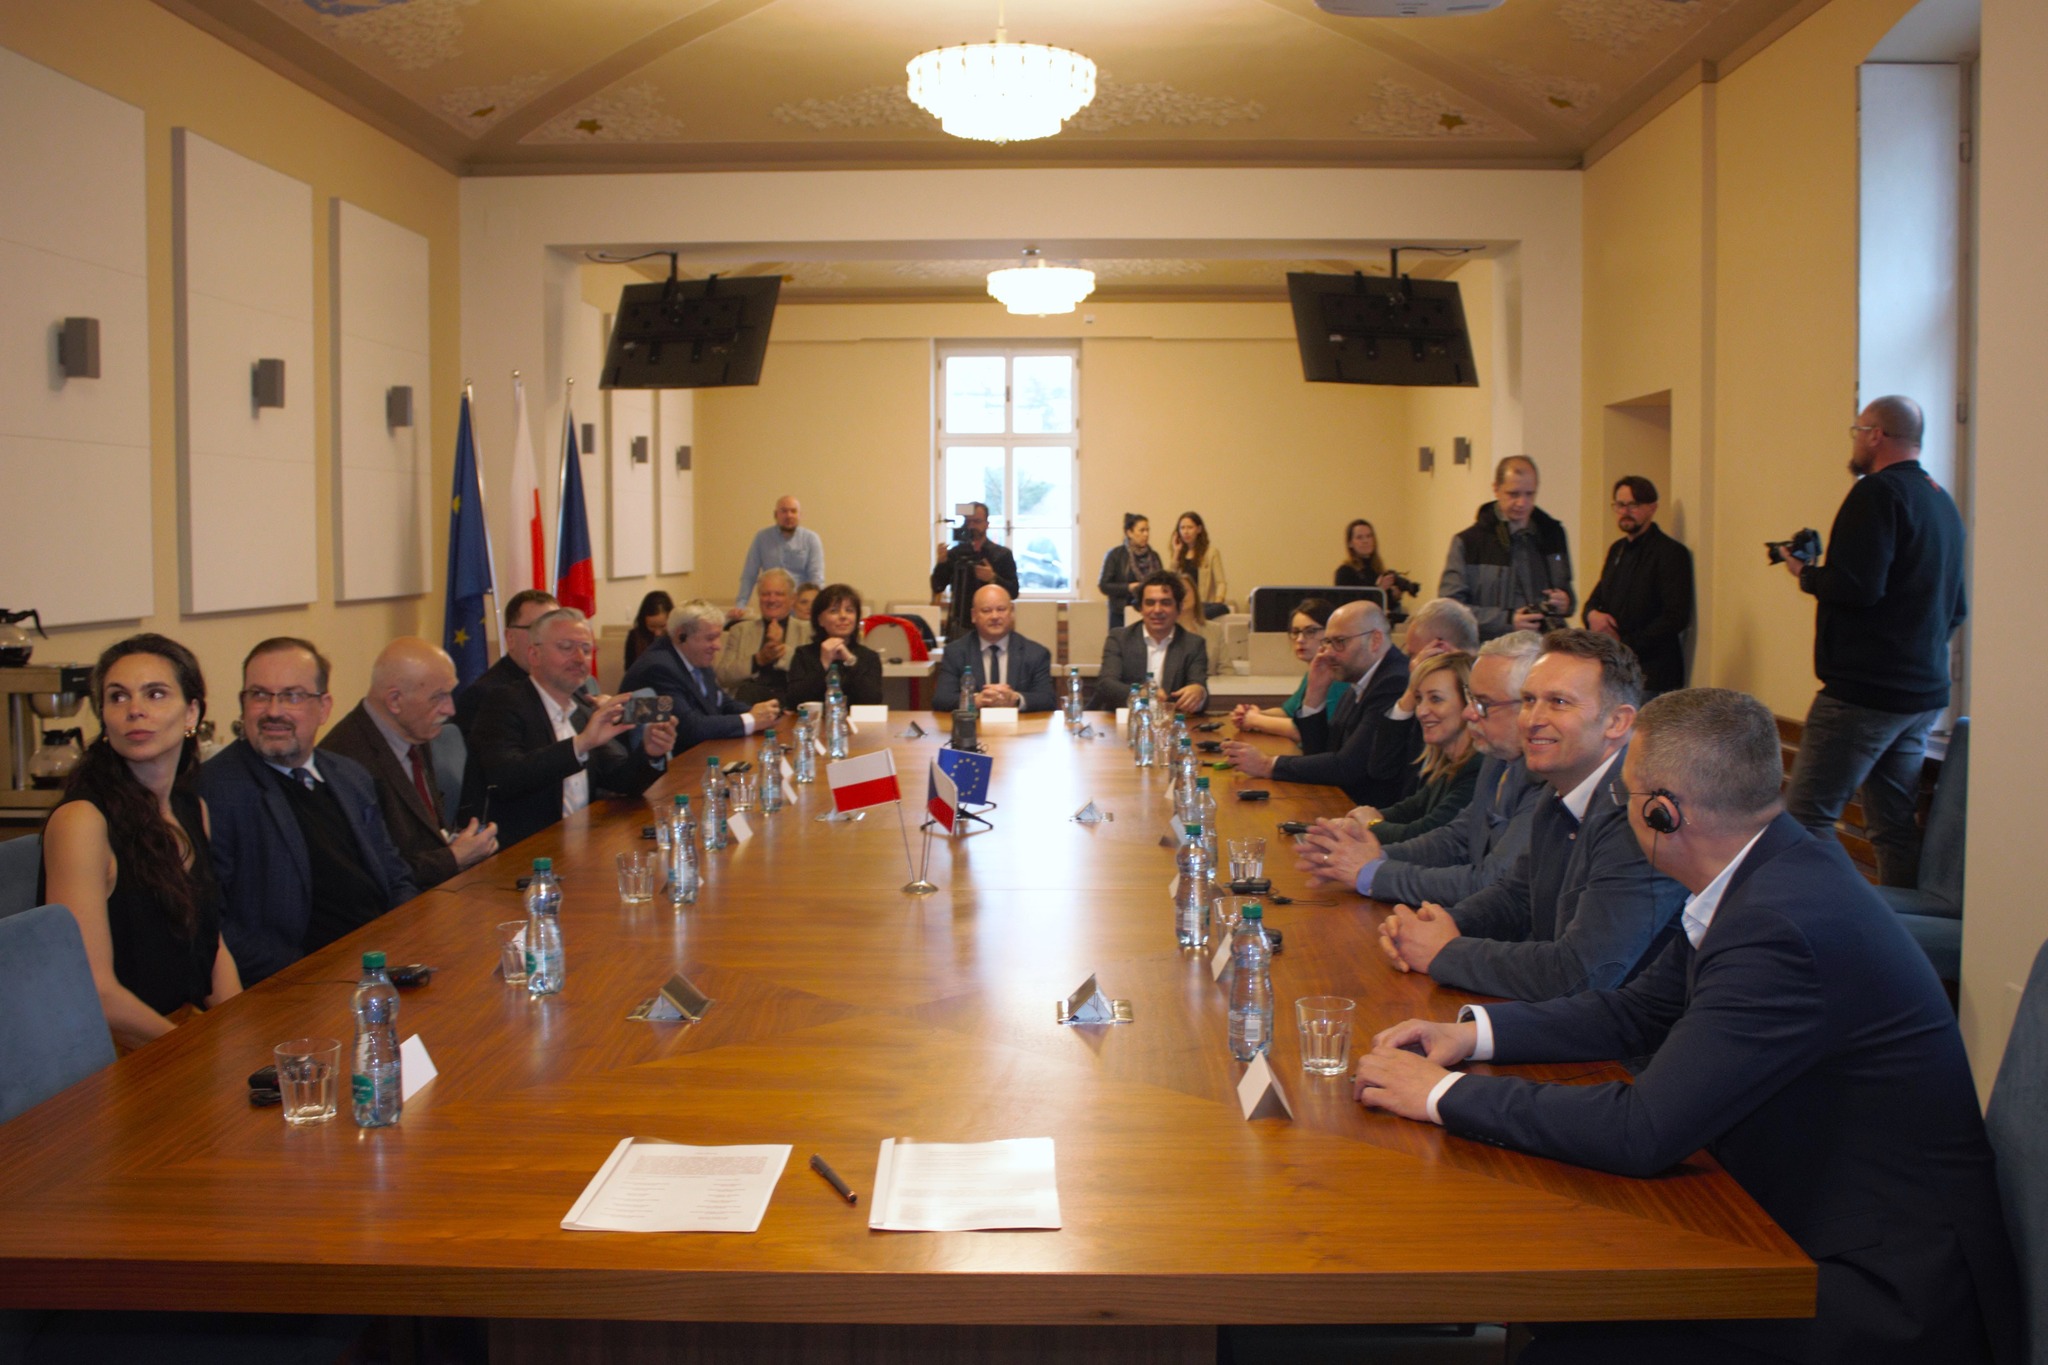 Všichni představitelé české a polské strany sedí u velkého jednacího stolu, na kterém jsou vlaječky České republiky a Polska.